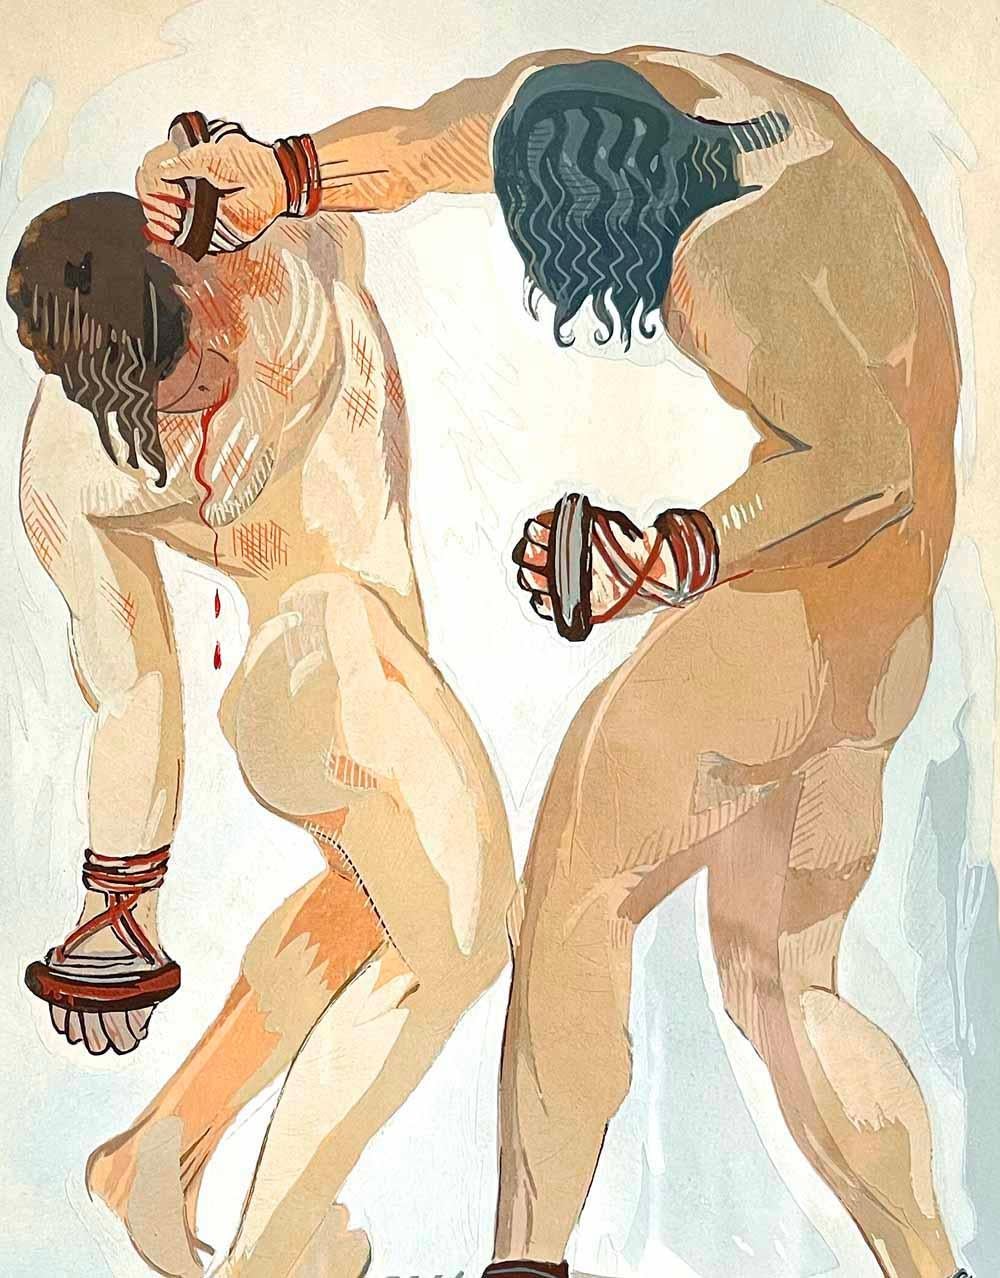 Cette superbe représentation de deux boxeurs masculins nus au plus fort de leur combat, l'un mettant l'autre KO, a été peinte par François-Louis Schmied, l'un des deux principaux artistes français spécialisés dans la conception et l'illustration de